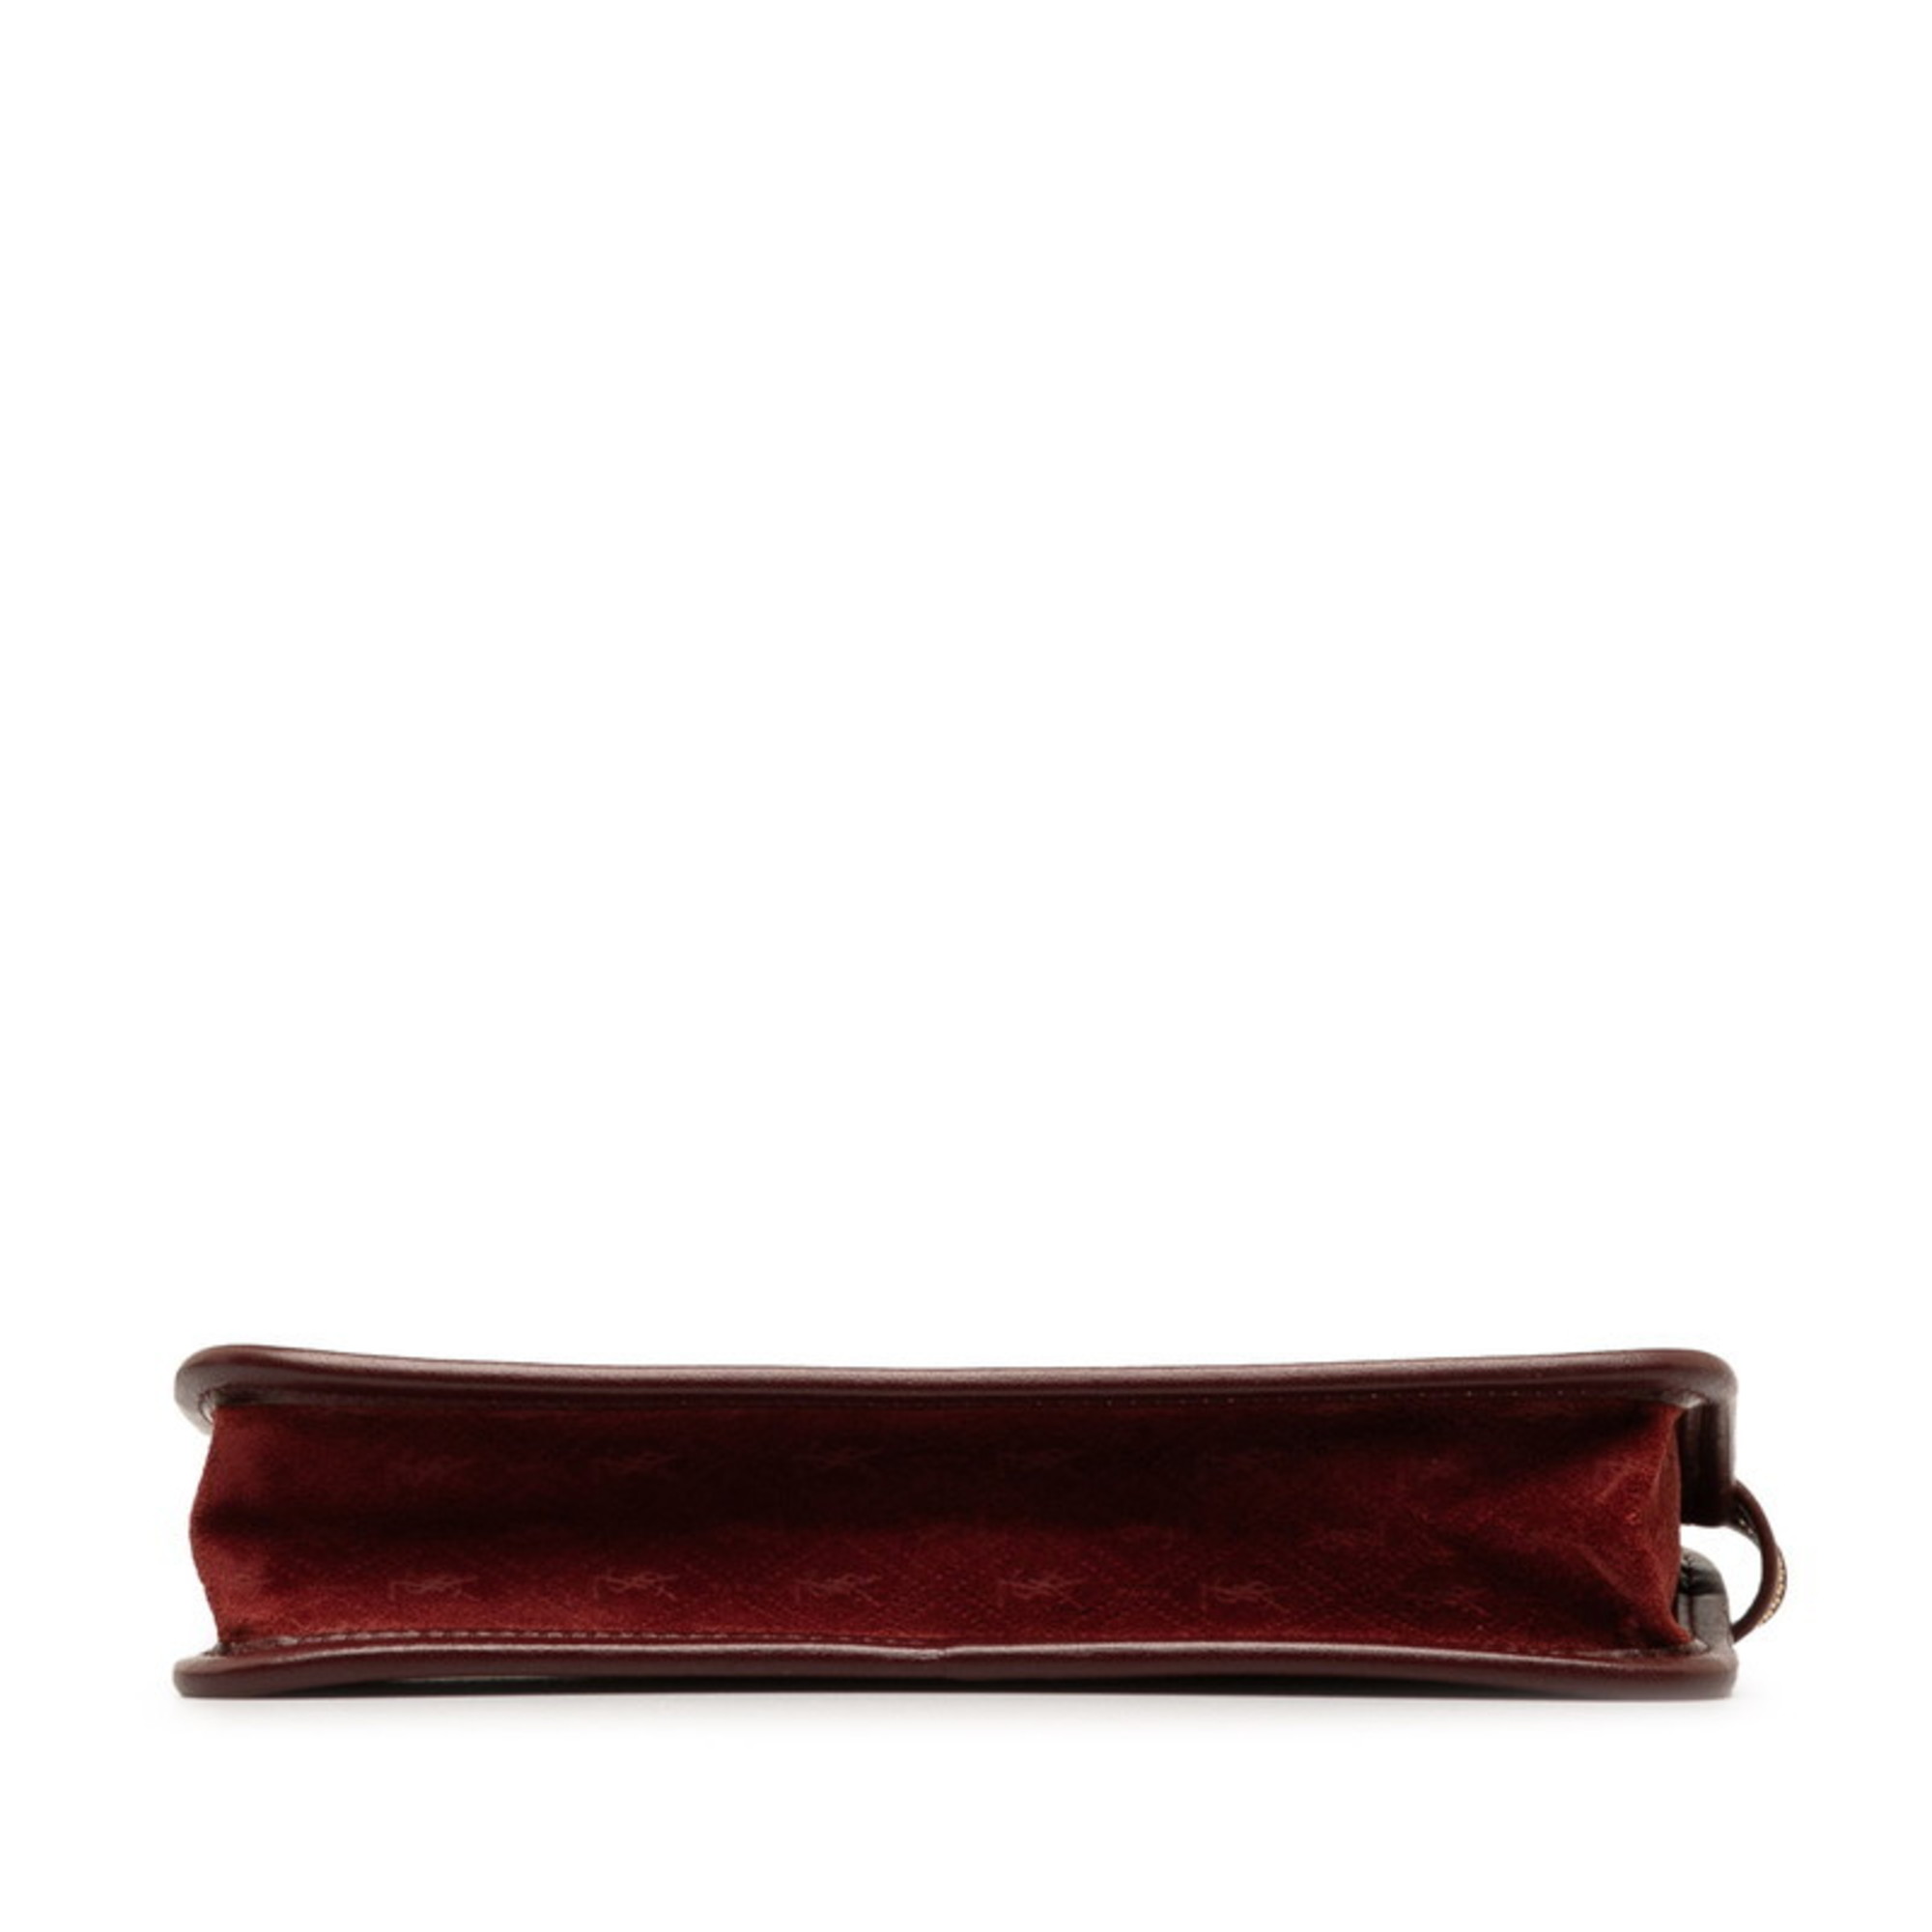 Saint Laurent YSL Clutch bag, second wine red, suede, leather, men's SAINT LAURENT